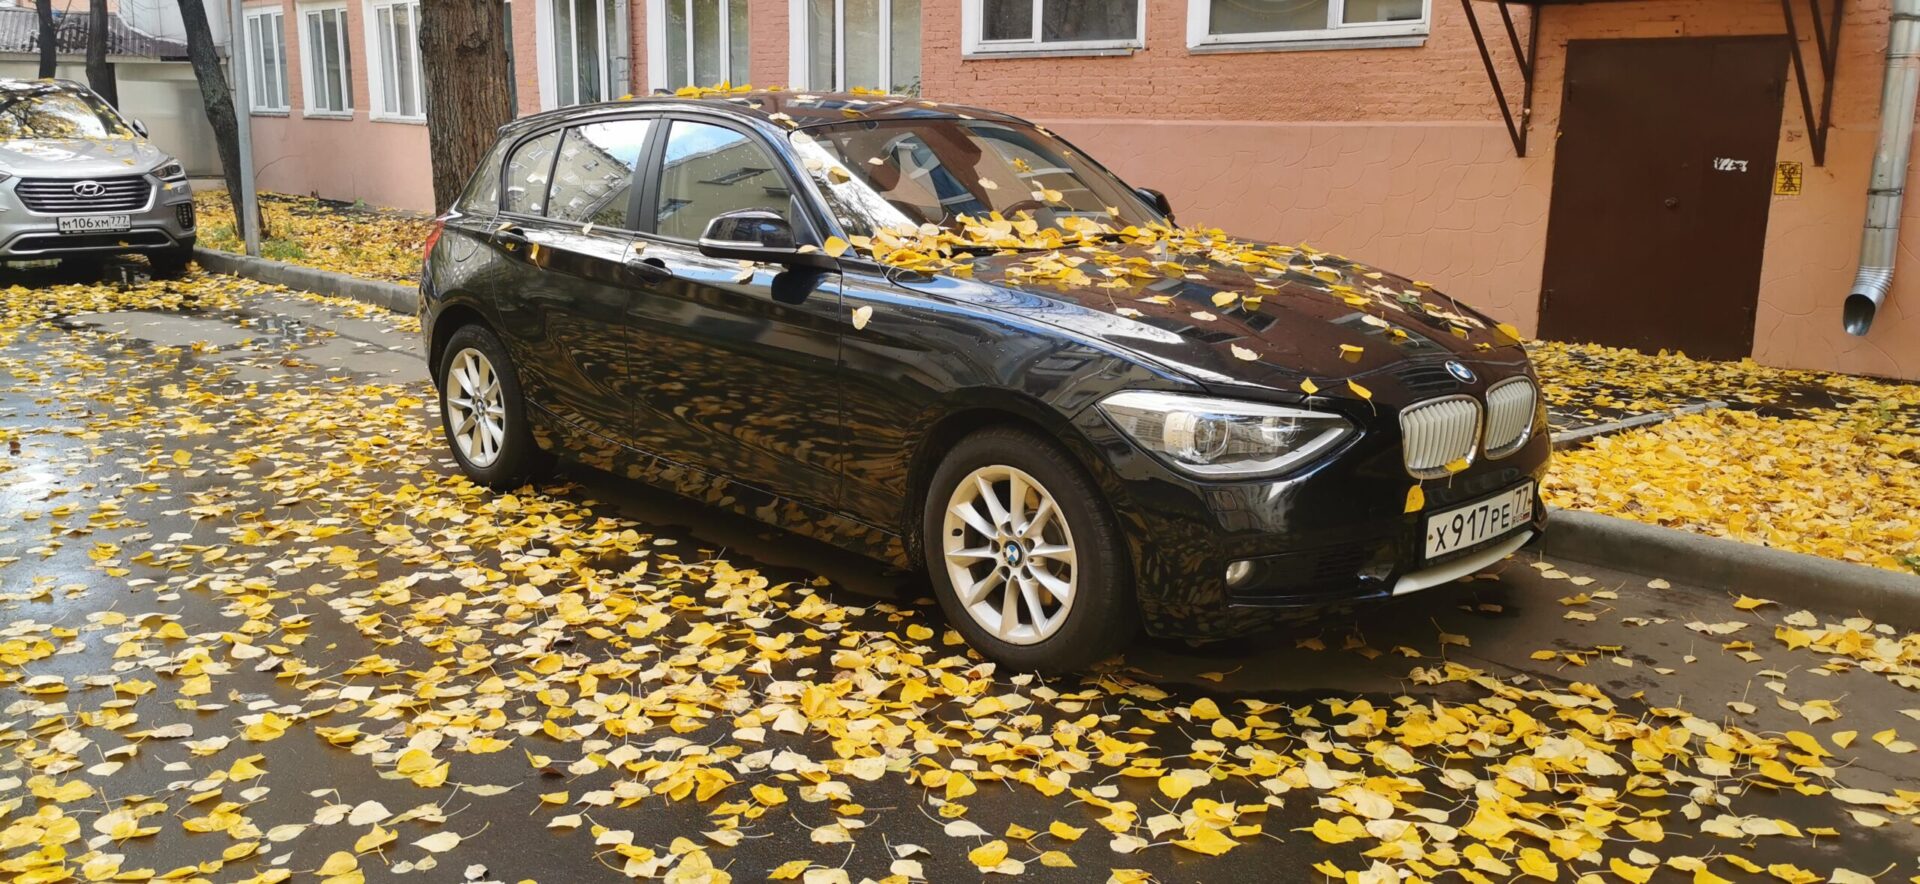 Россияне назвали черную модель BMW лучшим автомобилем для супергероя